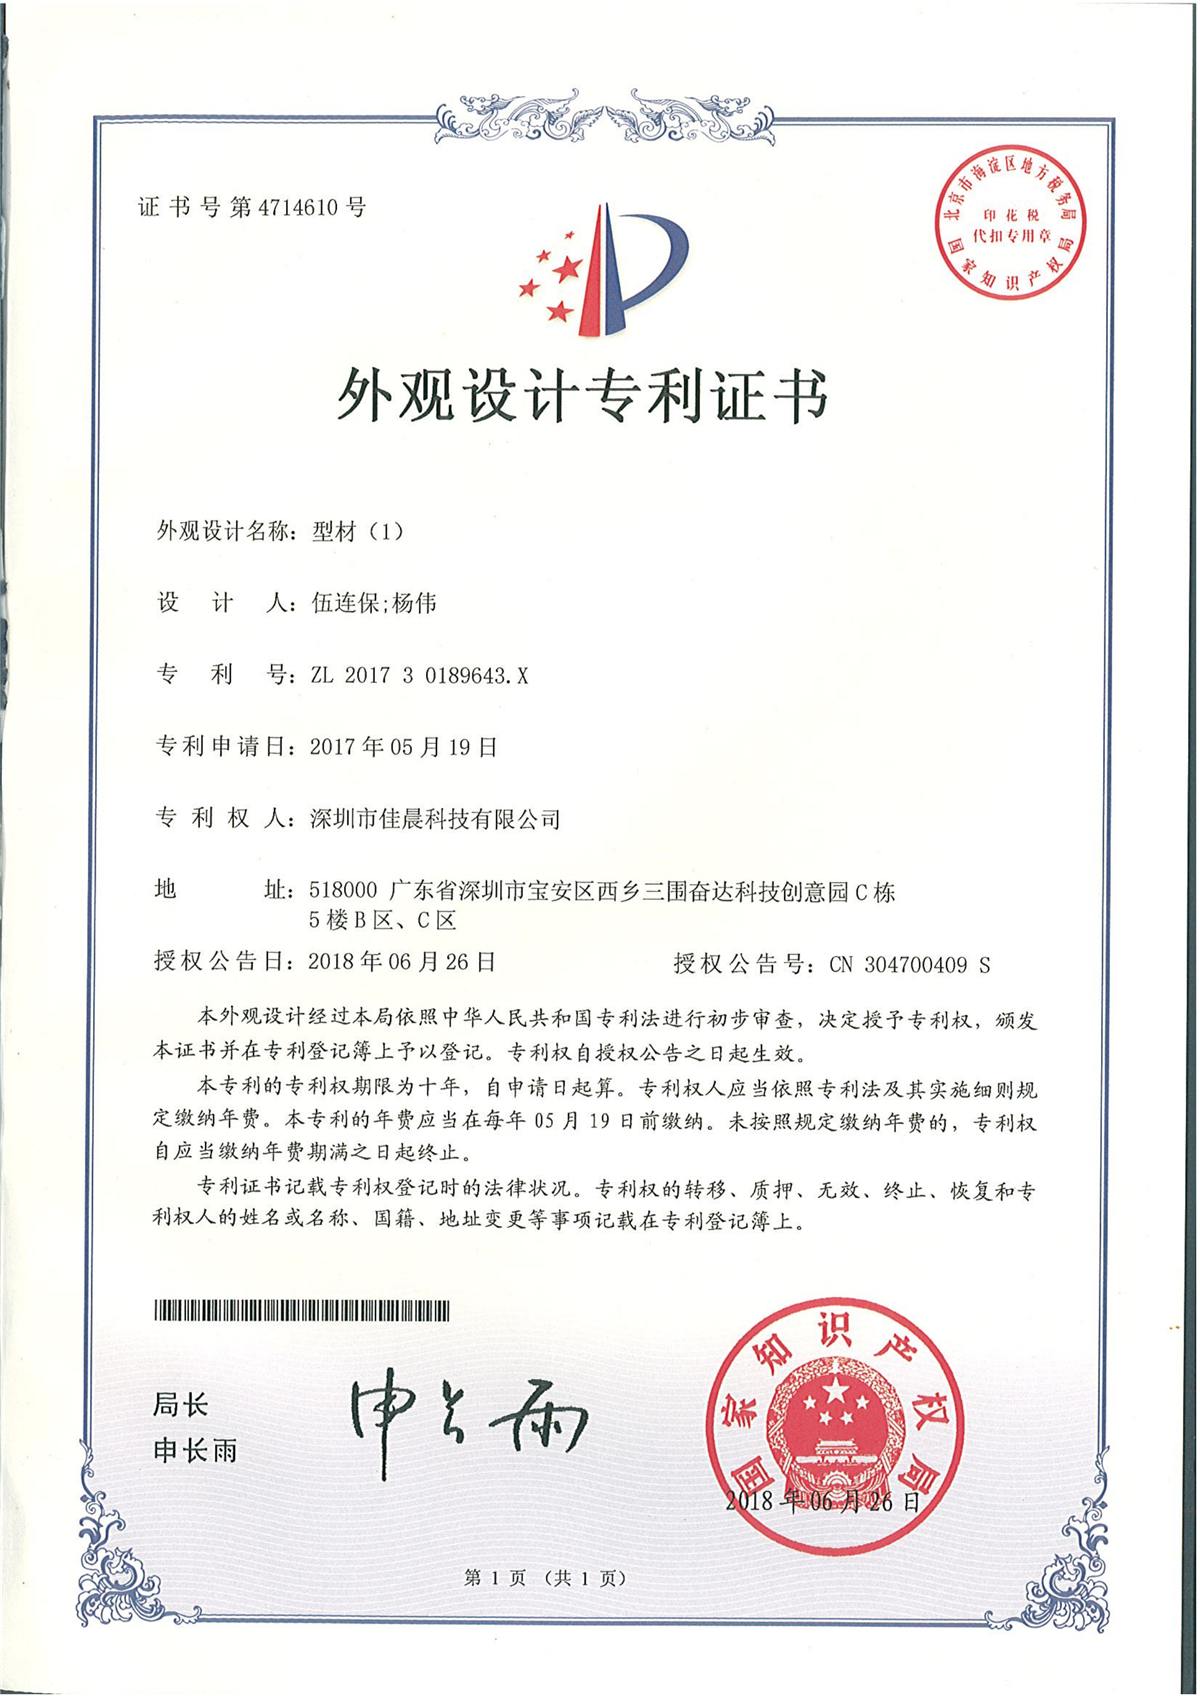 Patent certificate for design of loudspeaker